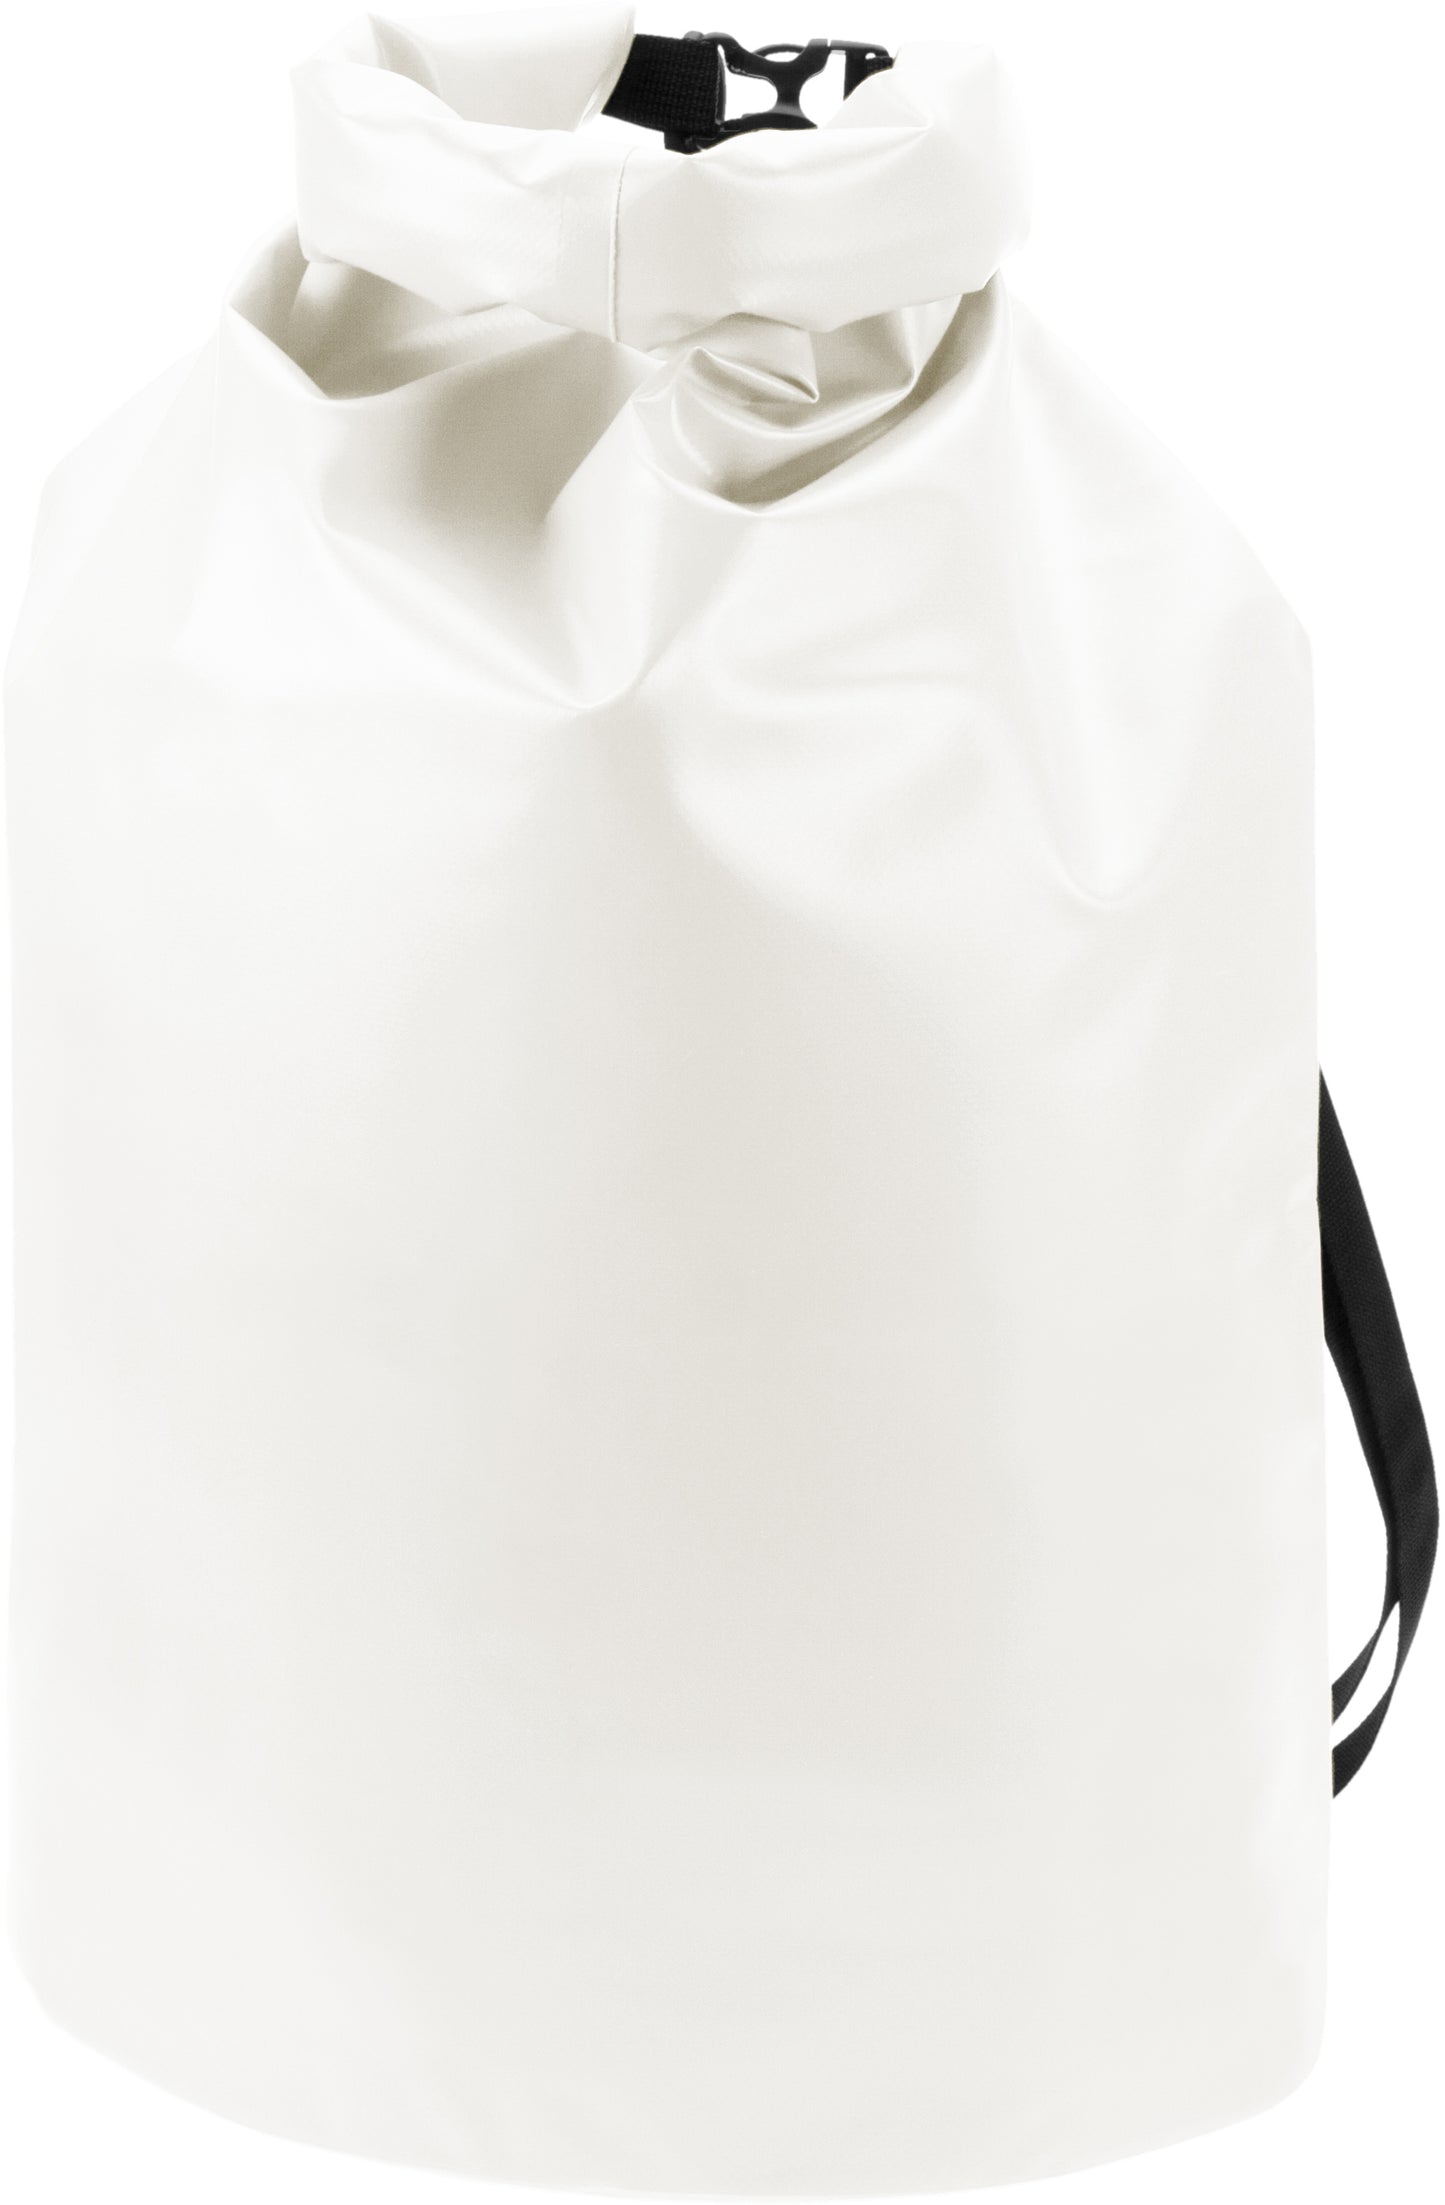 Wasserdichte Drybag 19l - Klimaneutral, abnehmbarem Schultergurt